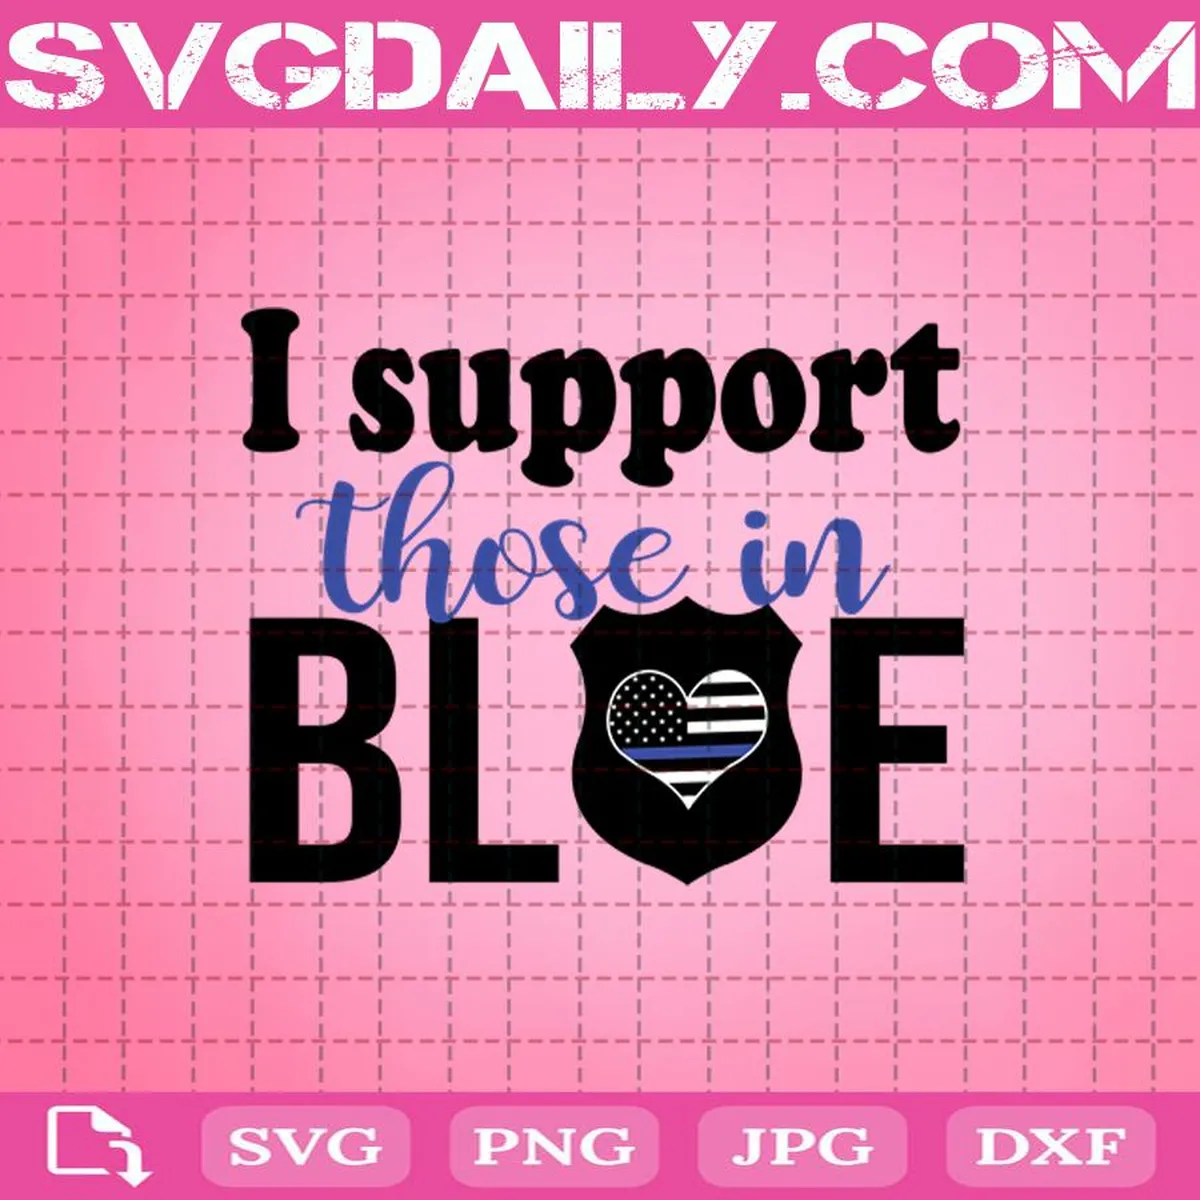 I Support Those In Blue Svg, Police Svg, I Support Svg, Blue Police Svg, Police Officer Svg, Thin Blue Line Svg, Blue Line Svg